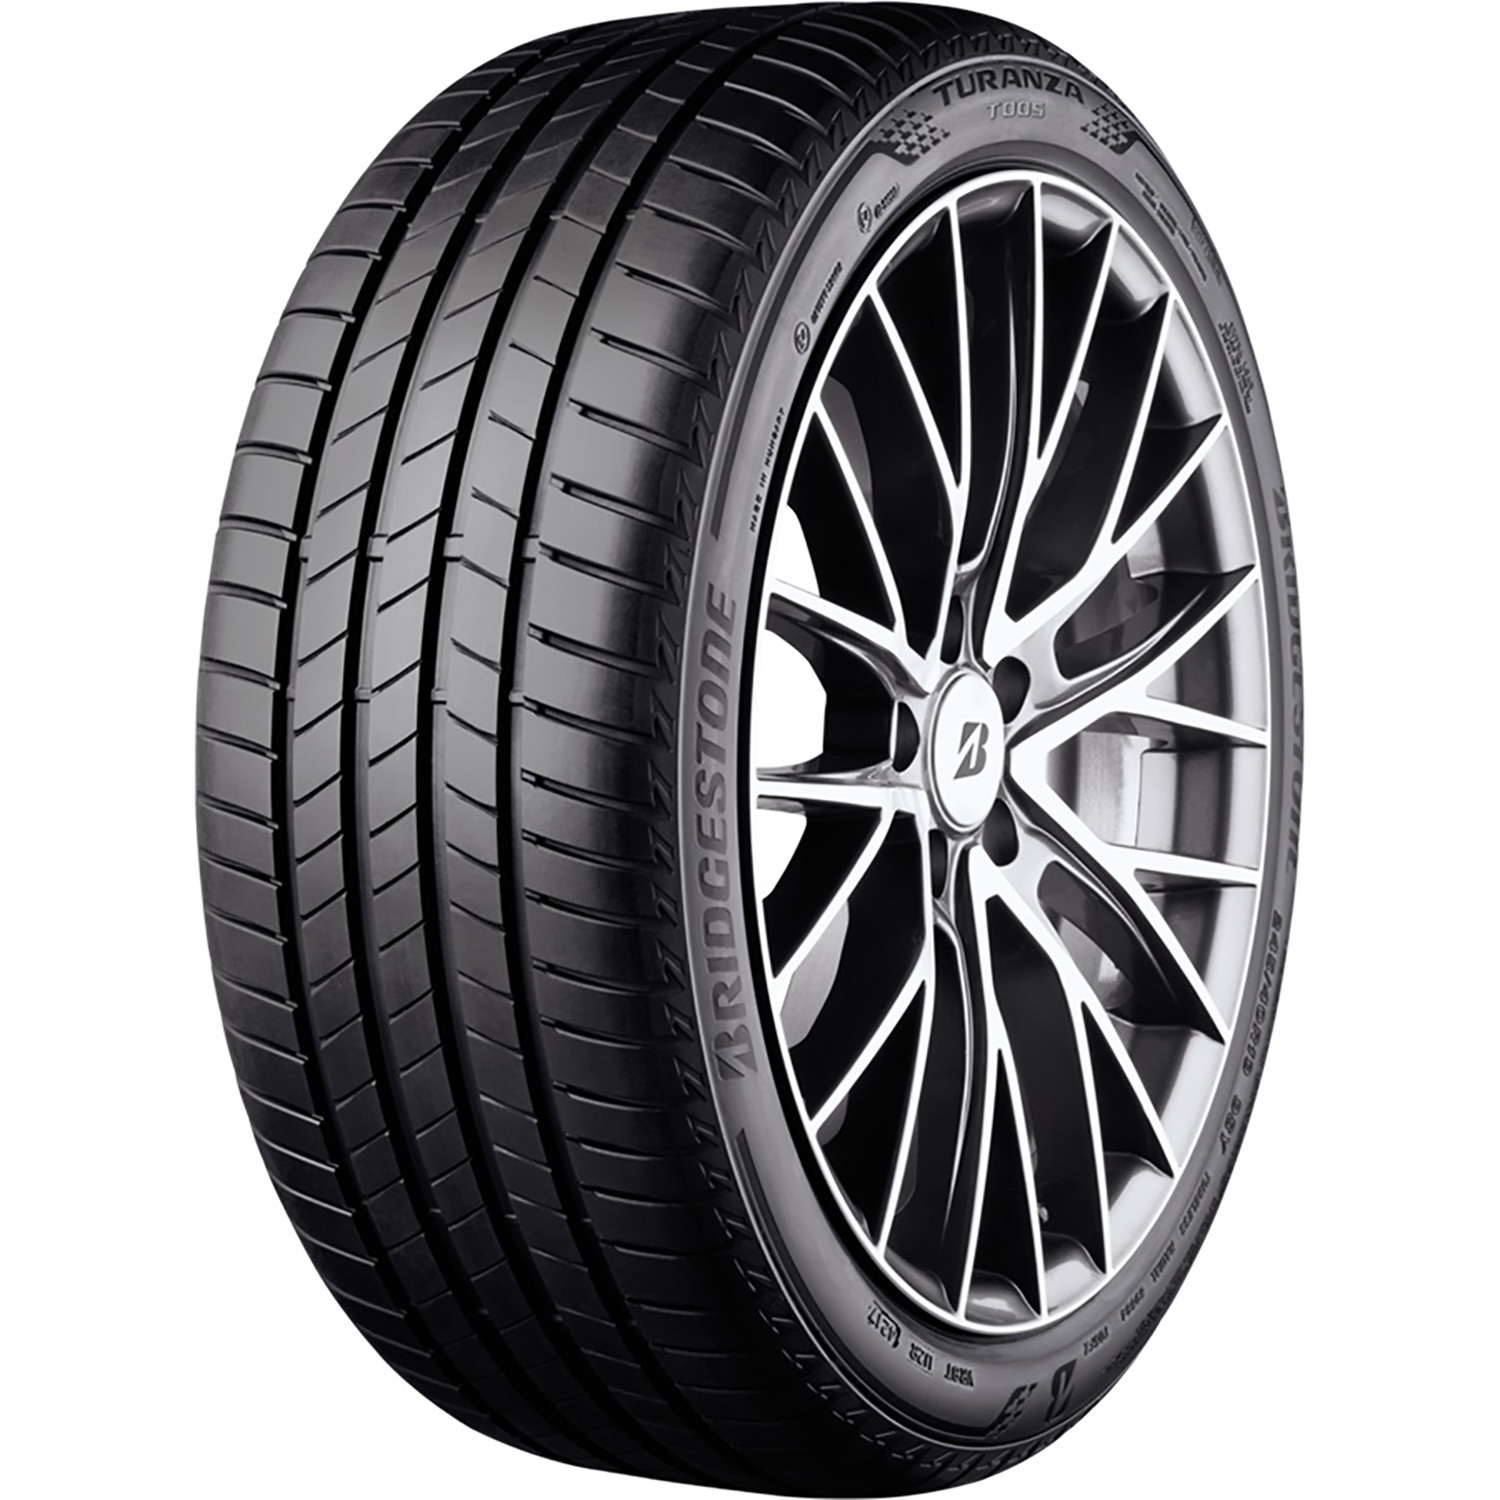 Автомобильная шина Bridgestone TURANZA T005 DRIVEGUARD Run Flat 245/45 R17 99Y turanza t005 245 45 r18 100y xl run flat bmw